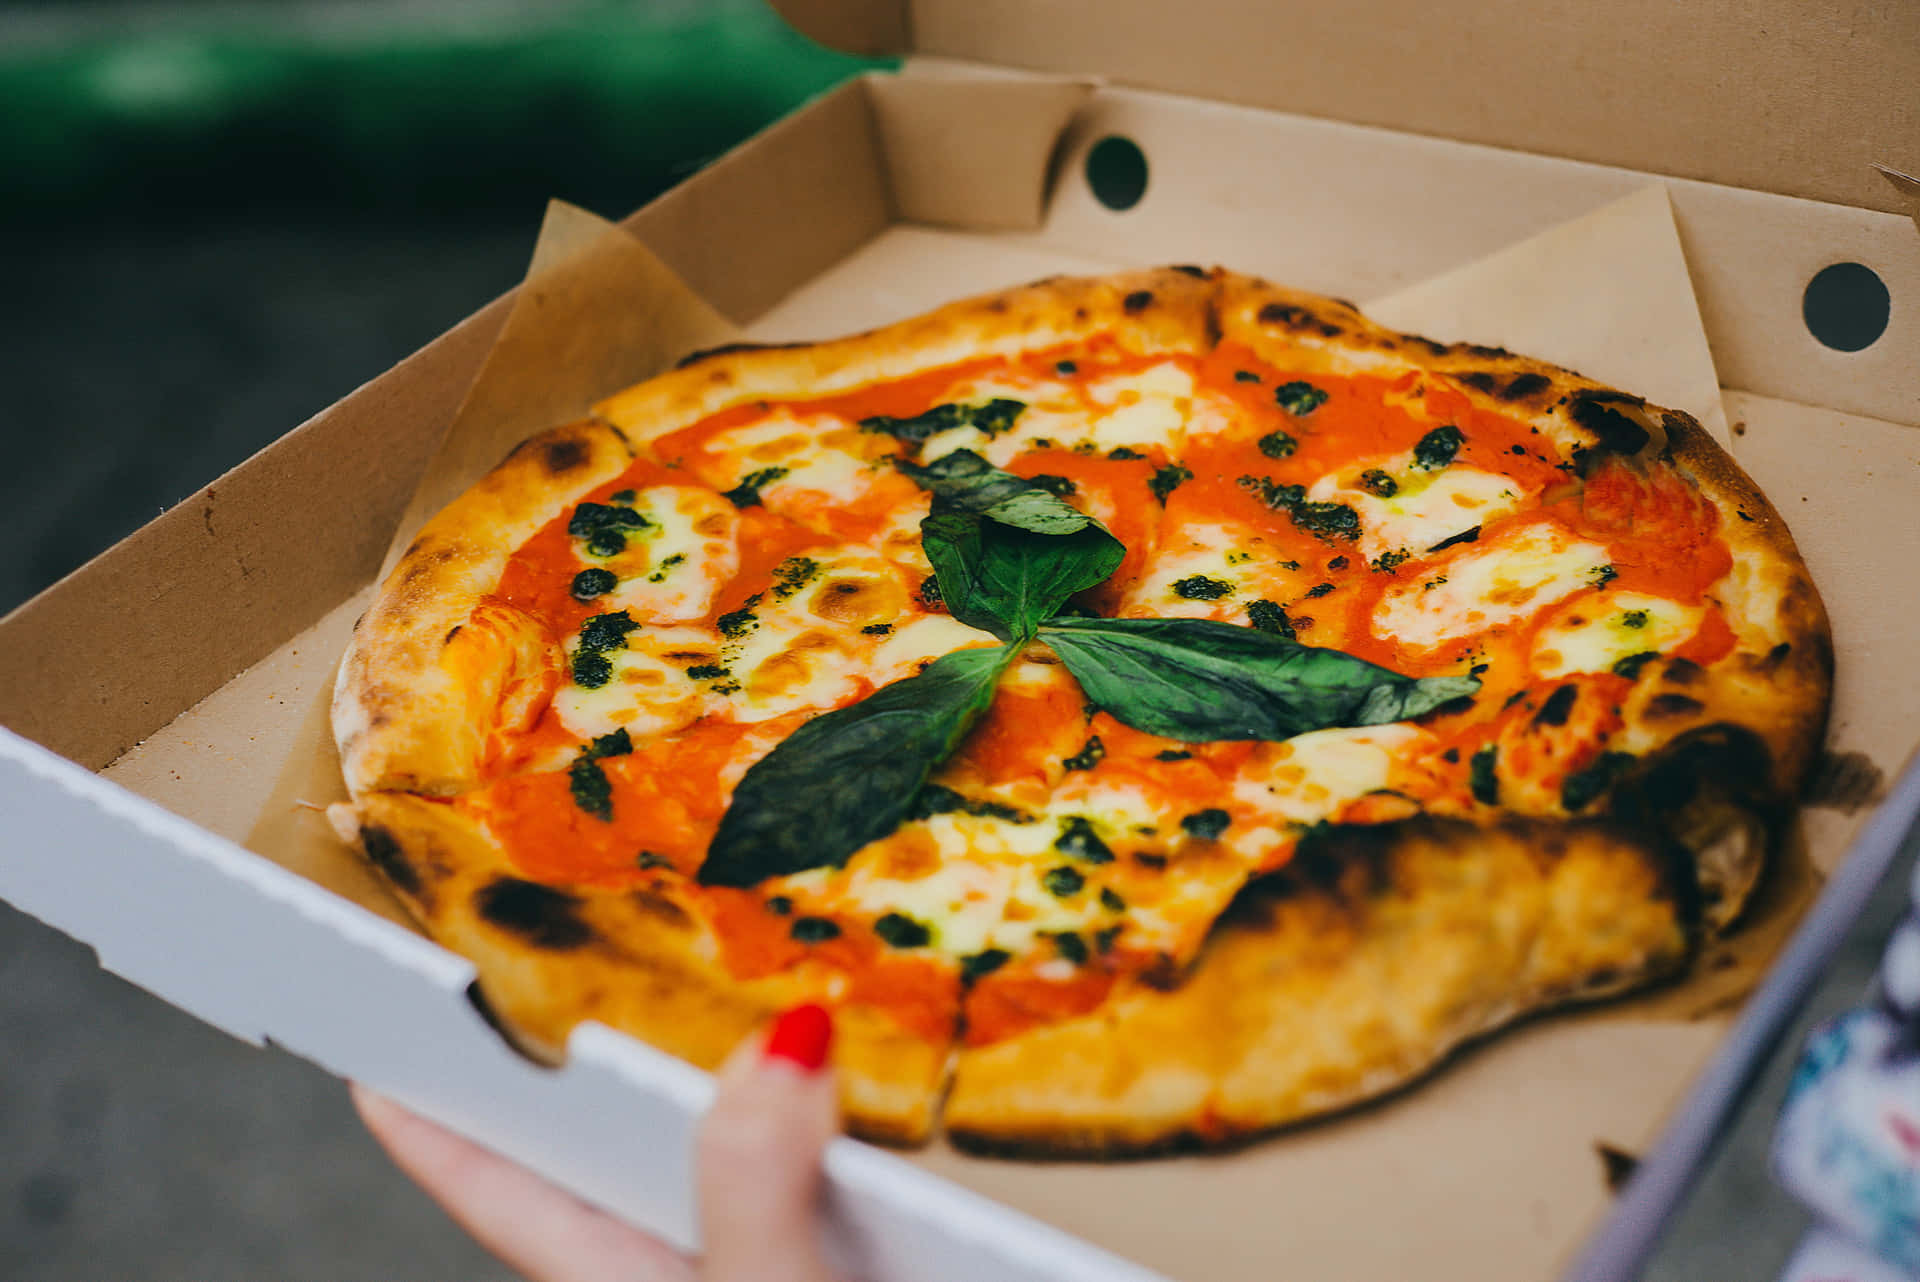 Desfrutede Um Delicioso Pedaço De Pizza Clássica No Estilo Italiano.